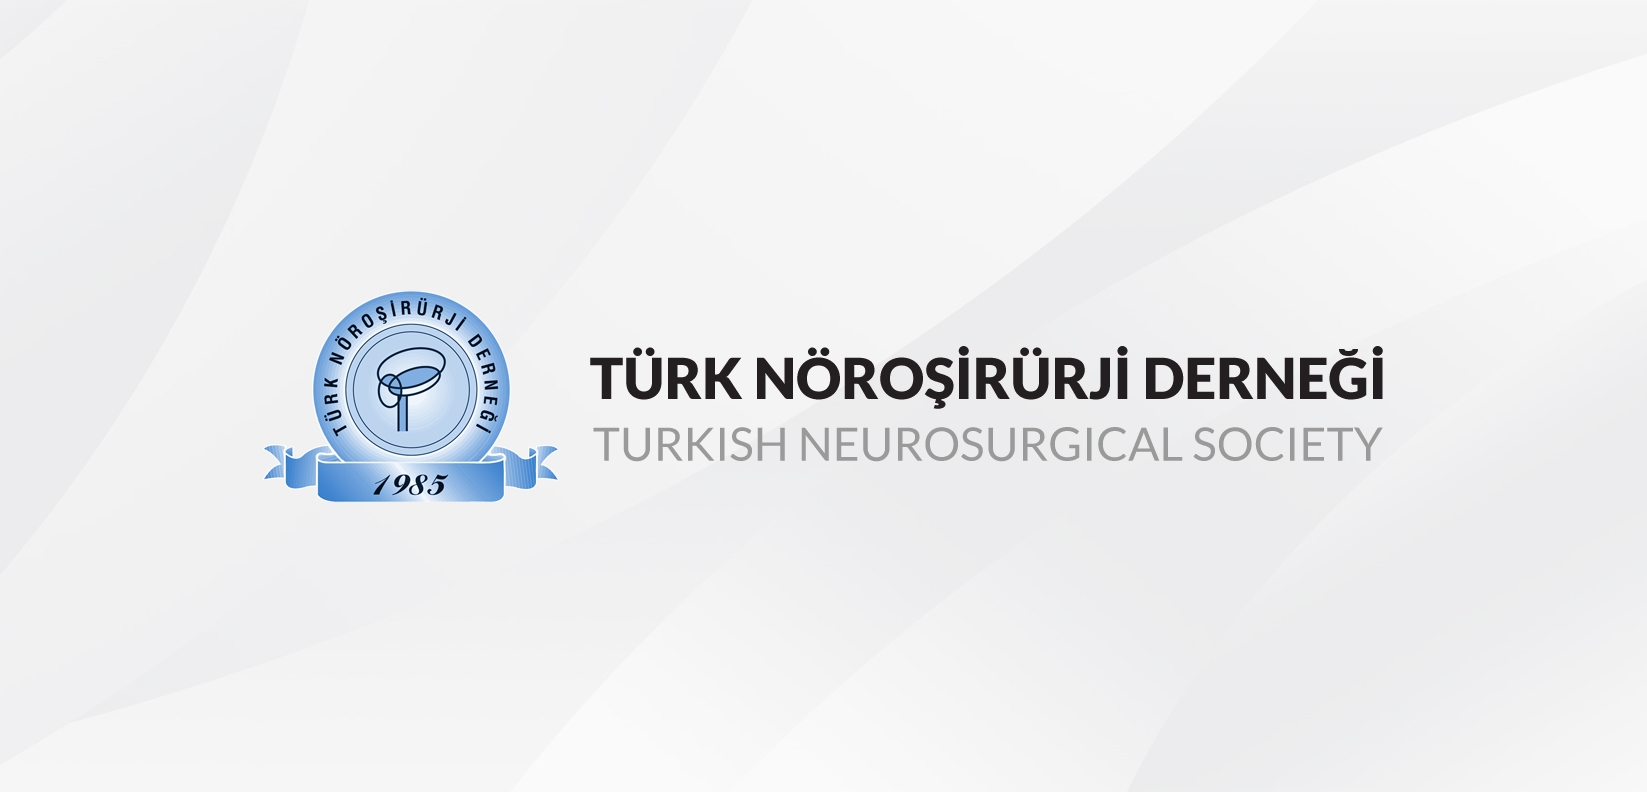 Türk Nöroşirürji Derneği Yeterlik Kurulu Nöroşirürji Yeterlik Yazılı Sınavı Duyurusu için tıklayınız